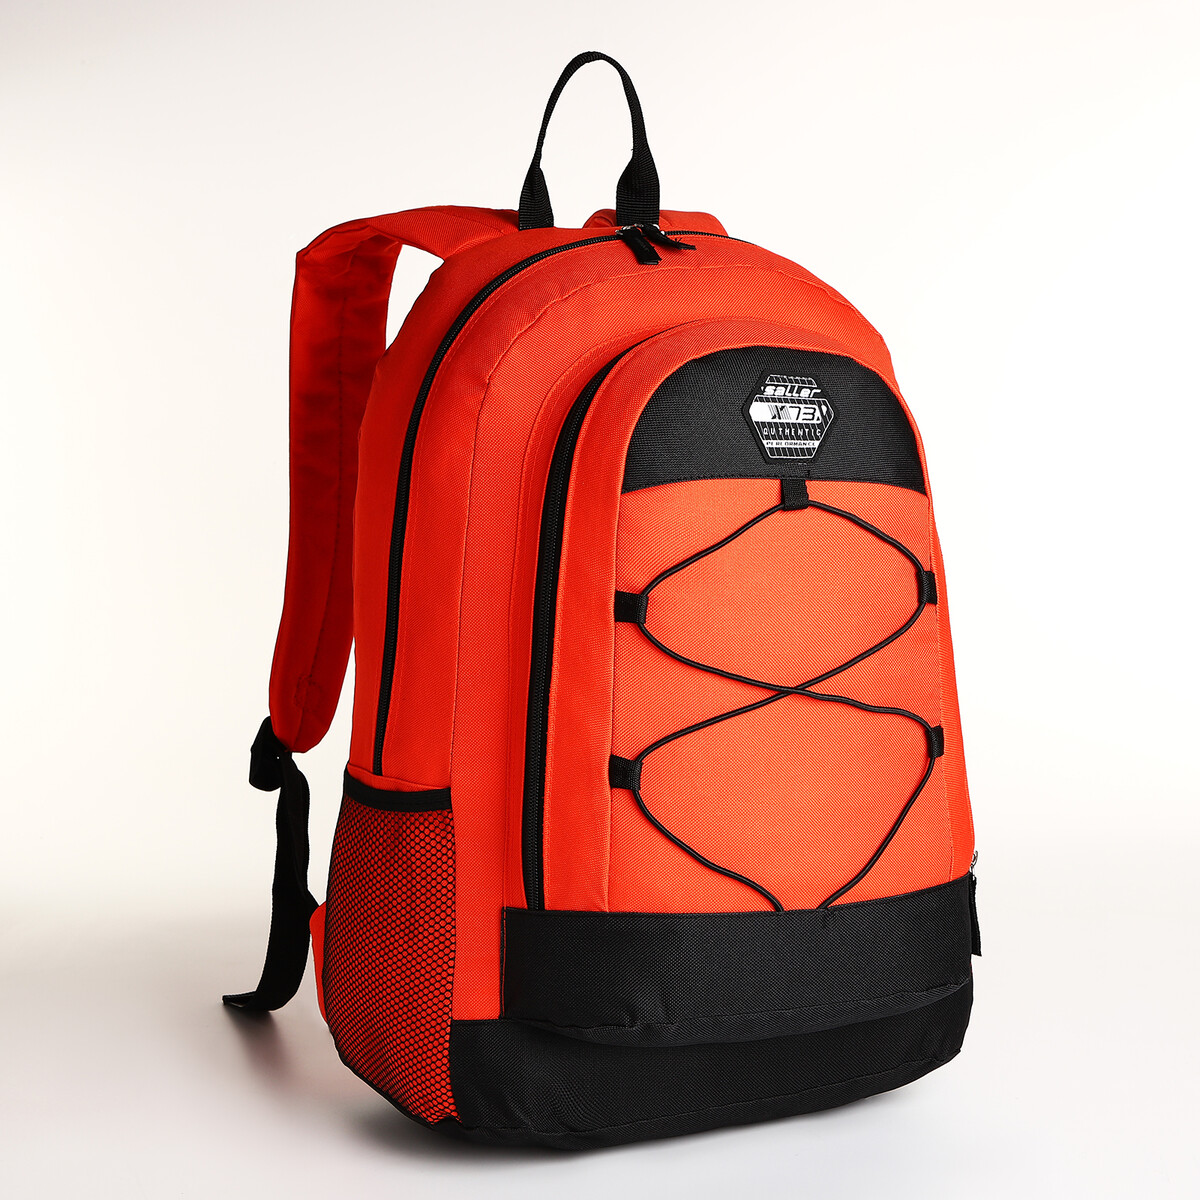 Рюкзак молодежный на молнии, 3 кармана, цвет оранжевый рюкзак школьный из текстиля на молнии 4 кармана кошелек серый оранжевый